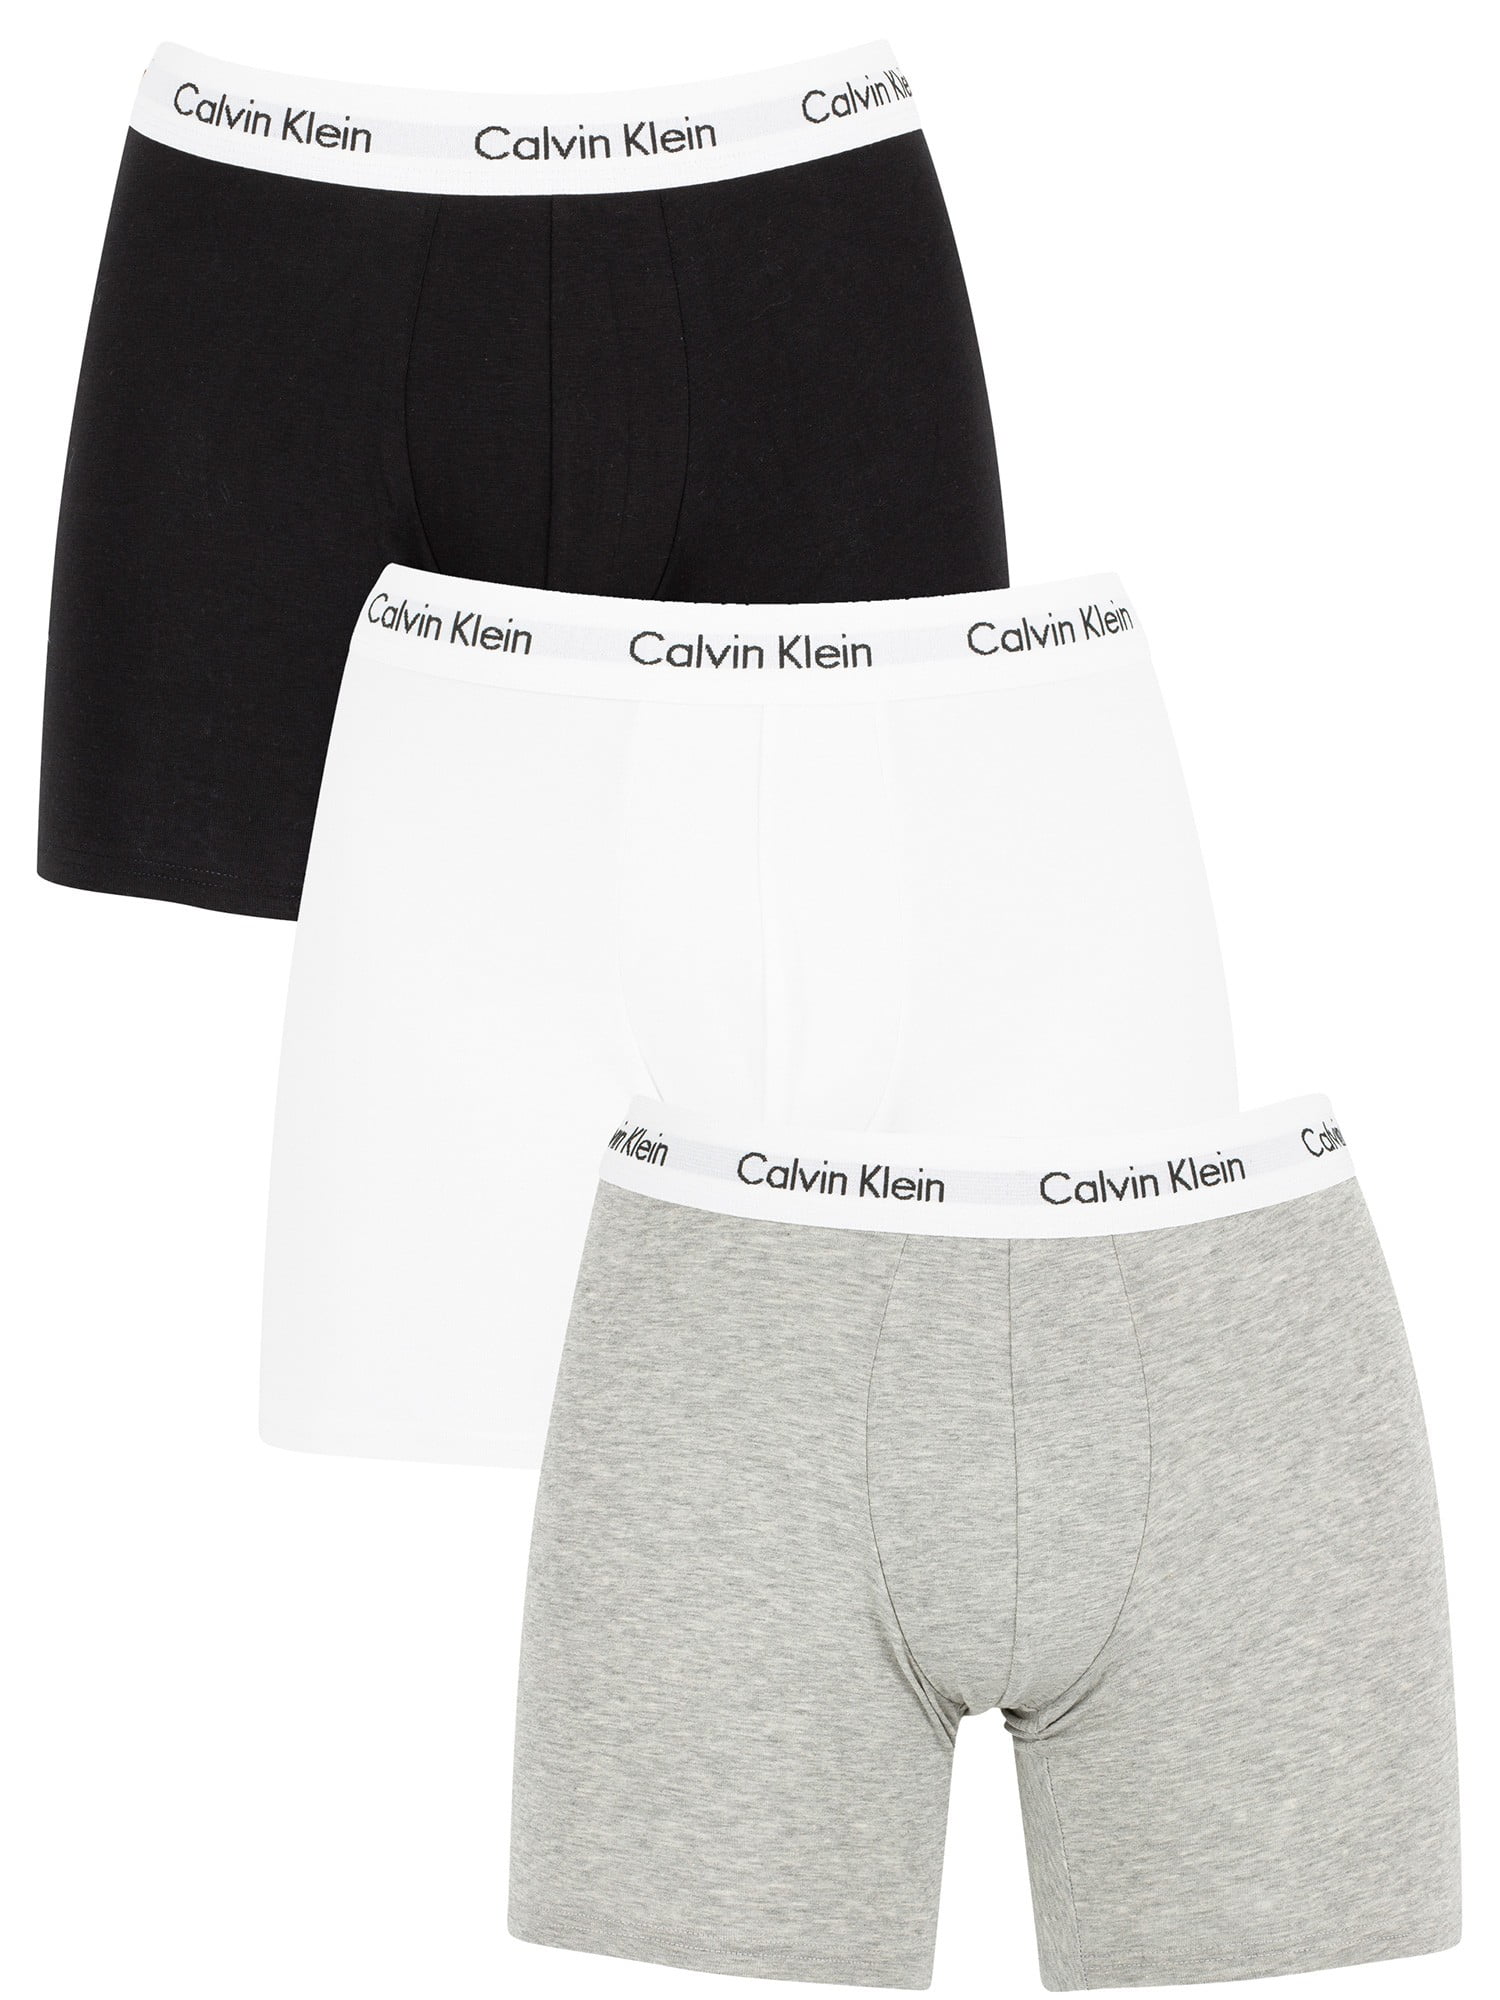 Calvin Klein 3 Pack Cotton Stretch Boxer Briefs, White 